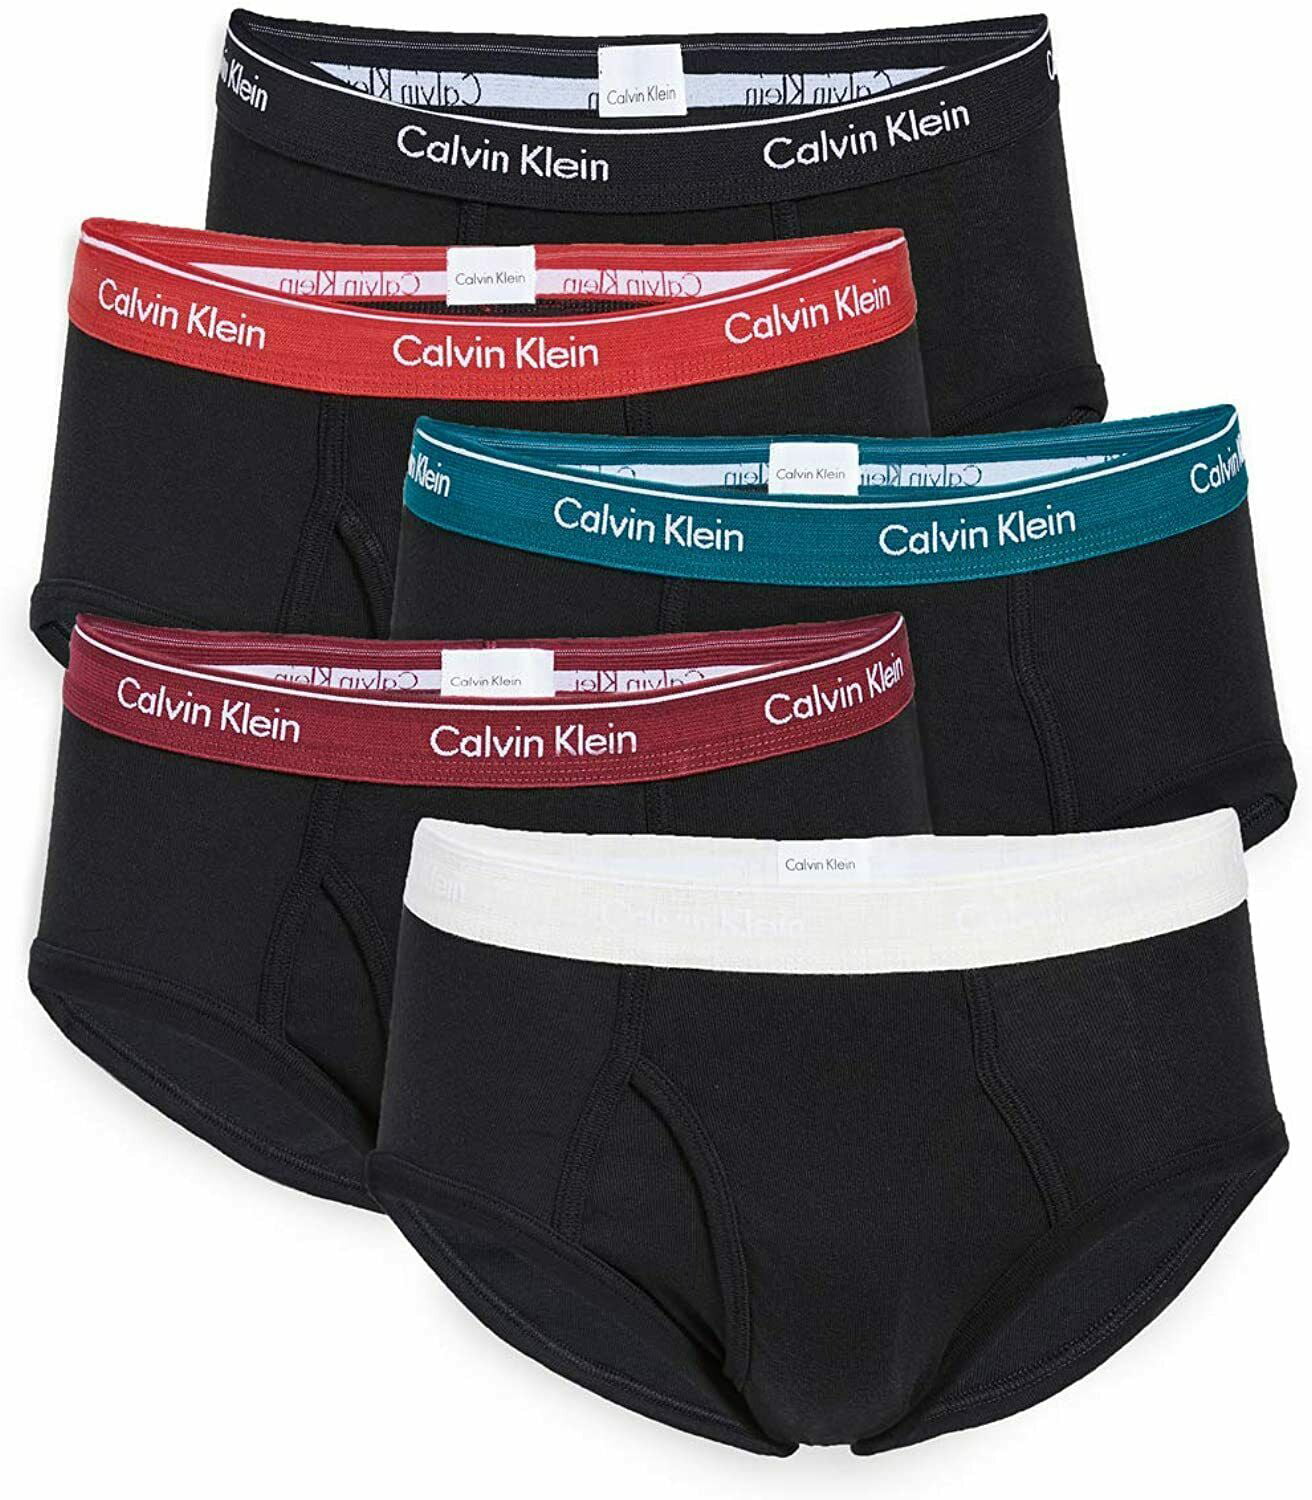 Calvin Klein - Calvin Klein Underwear Men's Cotton Classics Briefs 5